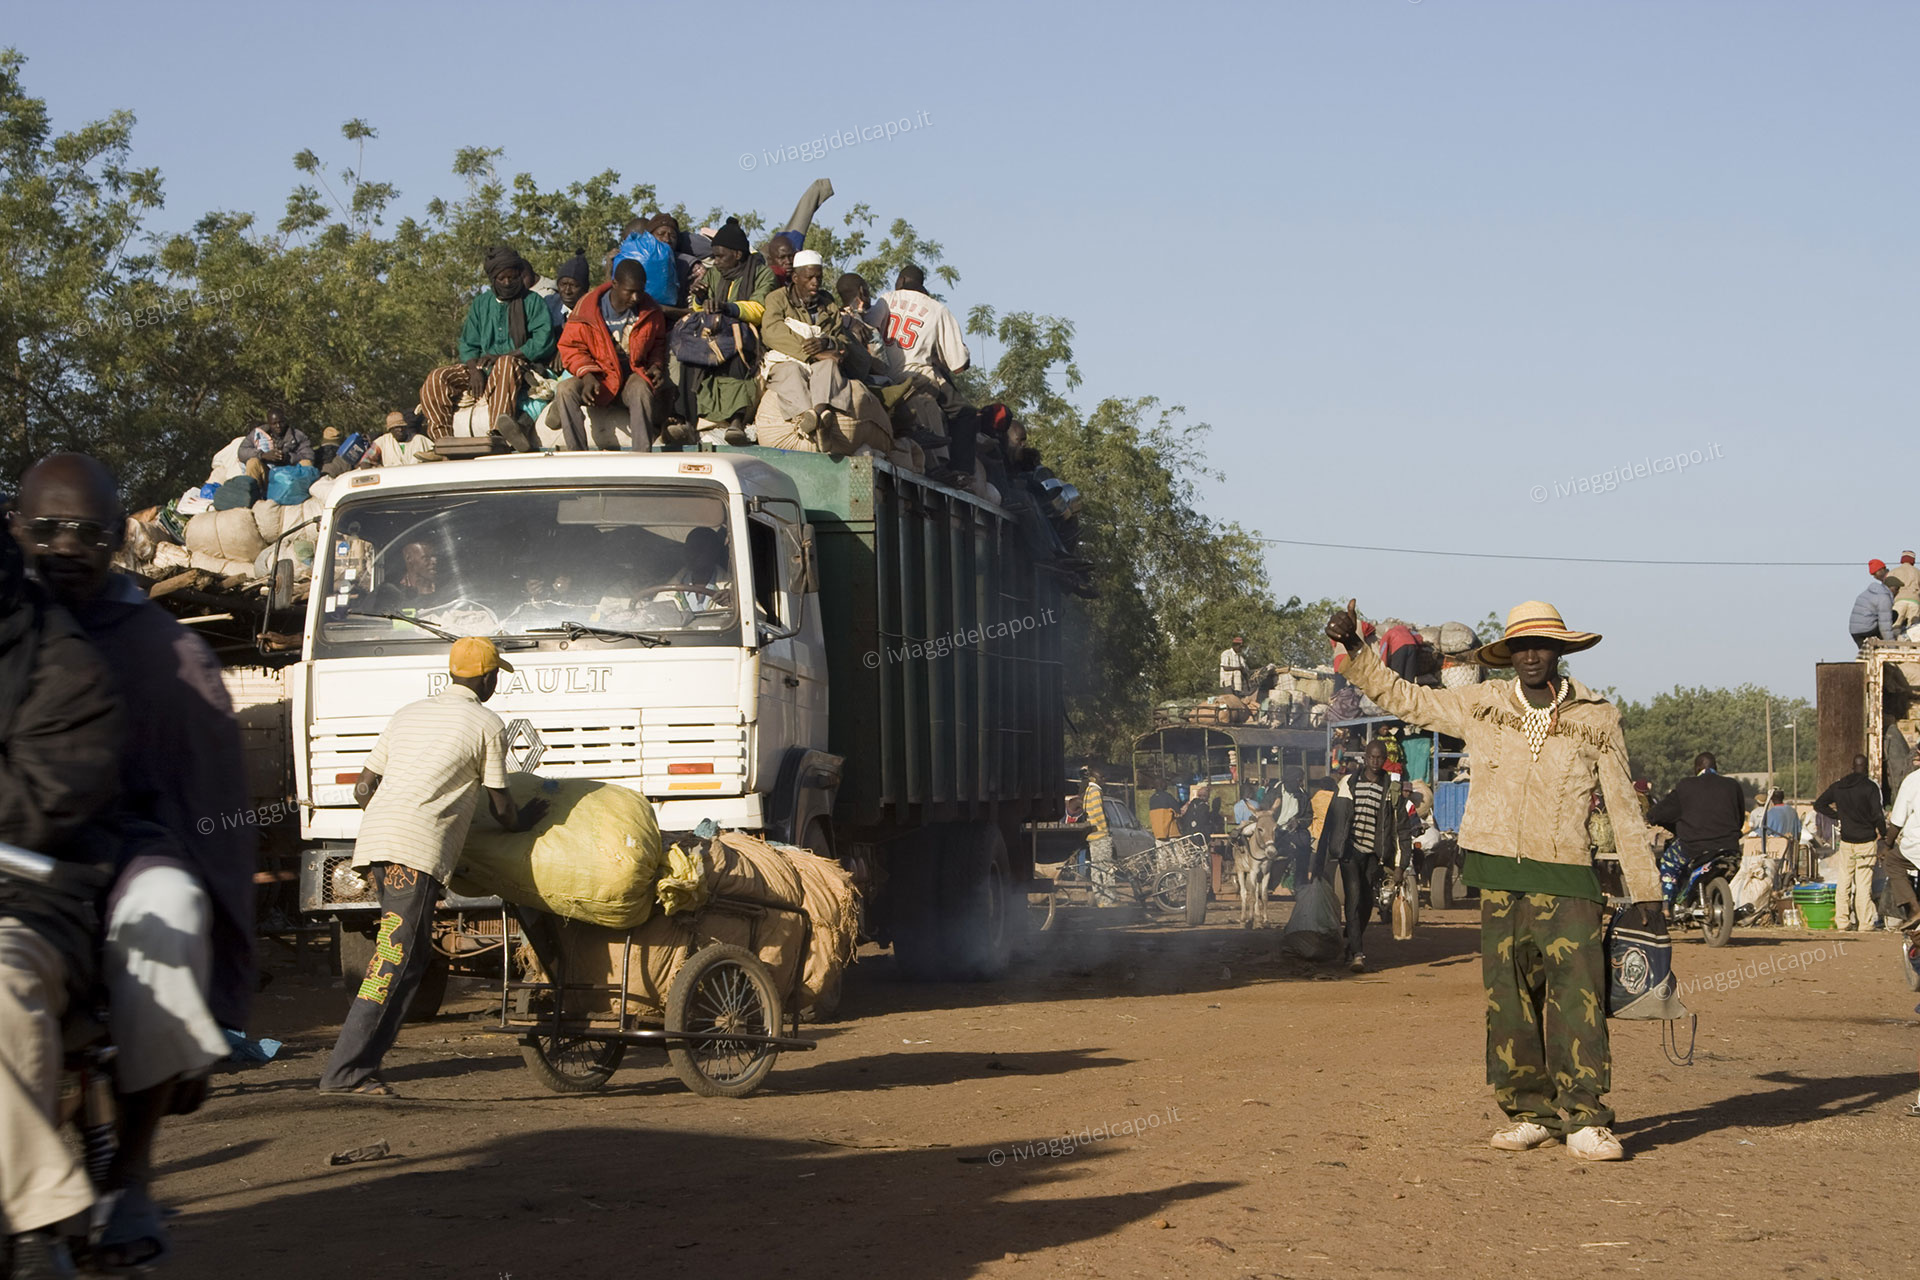 Gennaio 2011. Bus e camion pieni di merci e migranti